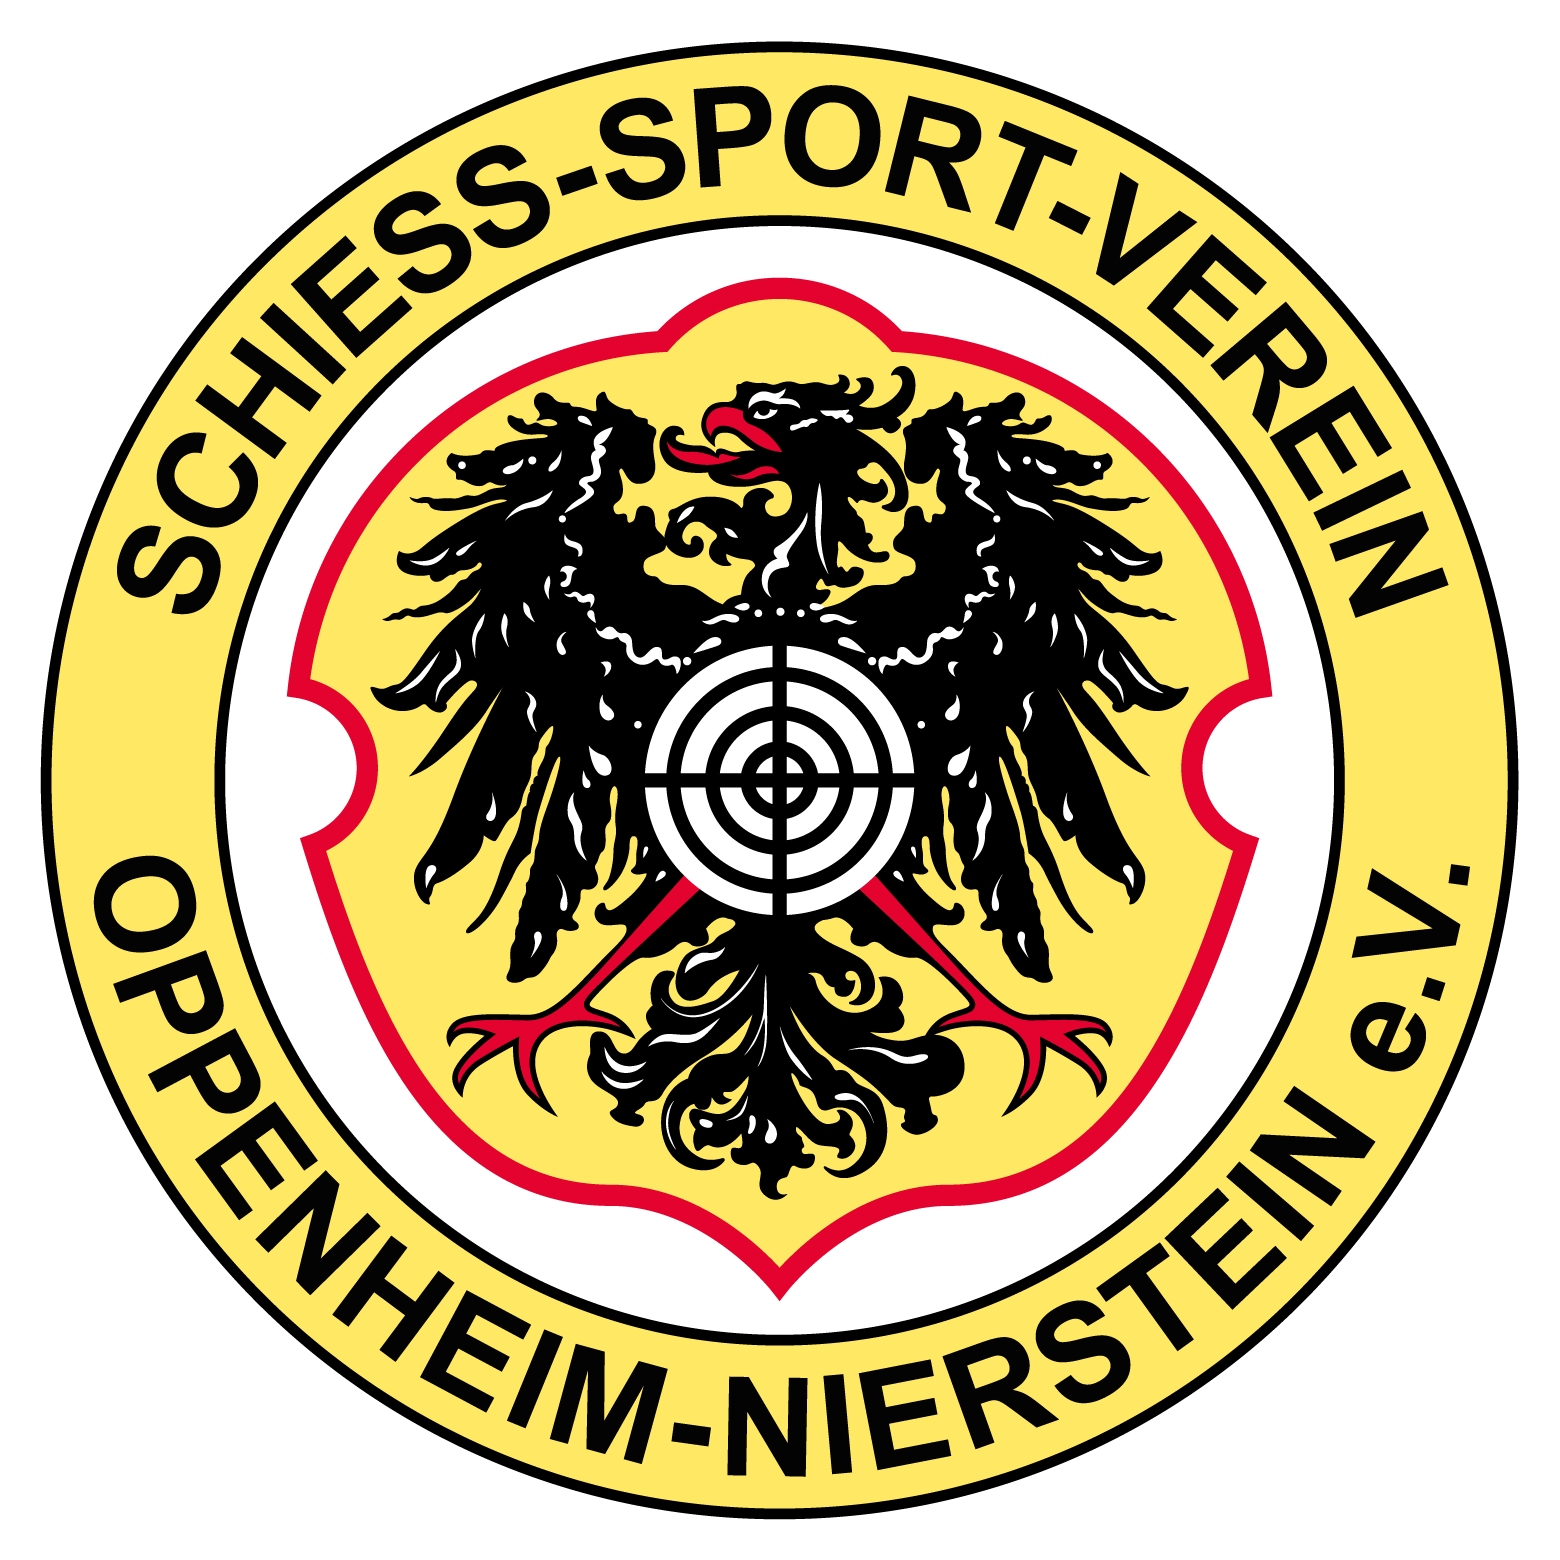 Schieß-Sport-Verein Oppenheim/Nierstein e.V.